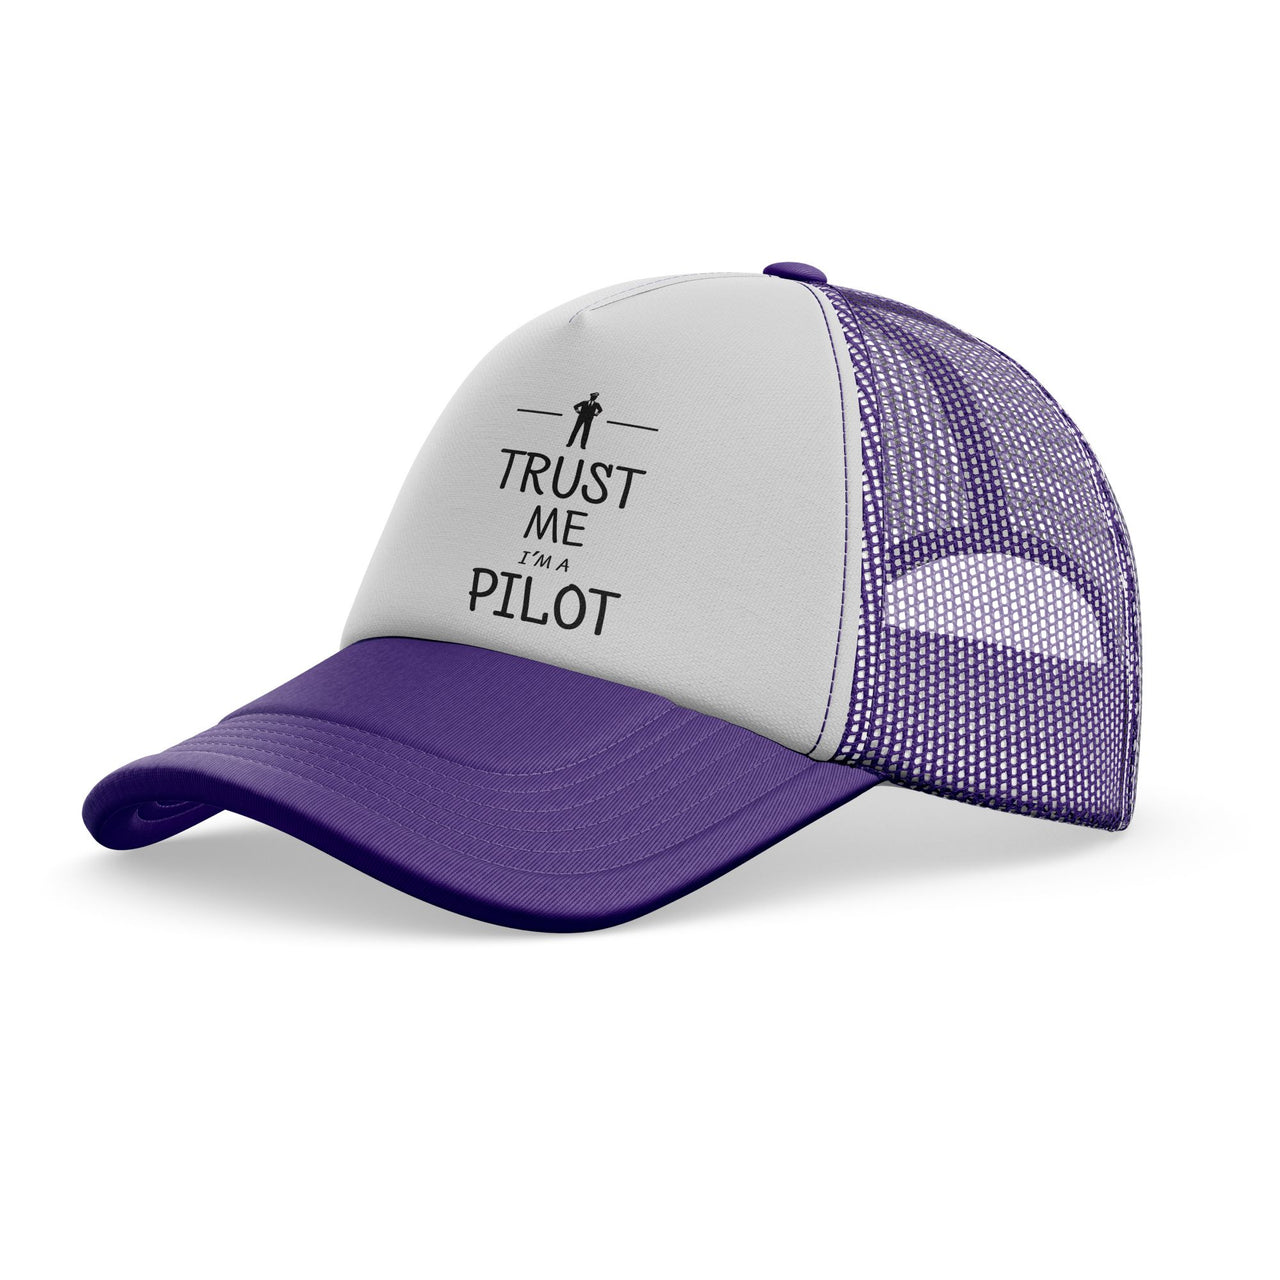 Trust Me I'm a Pilot Designed Trucker Caps & Hats